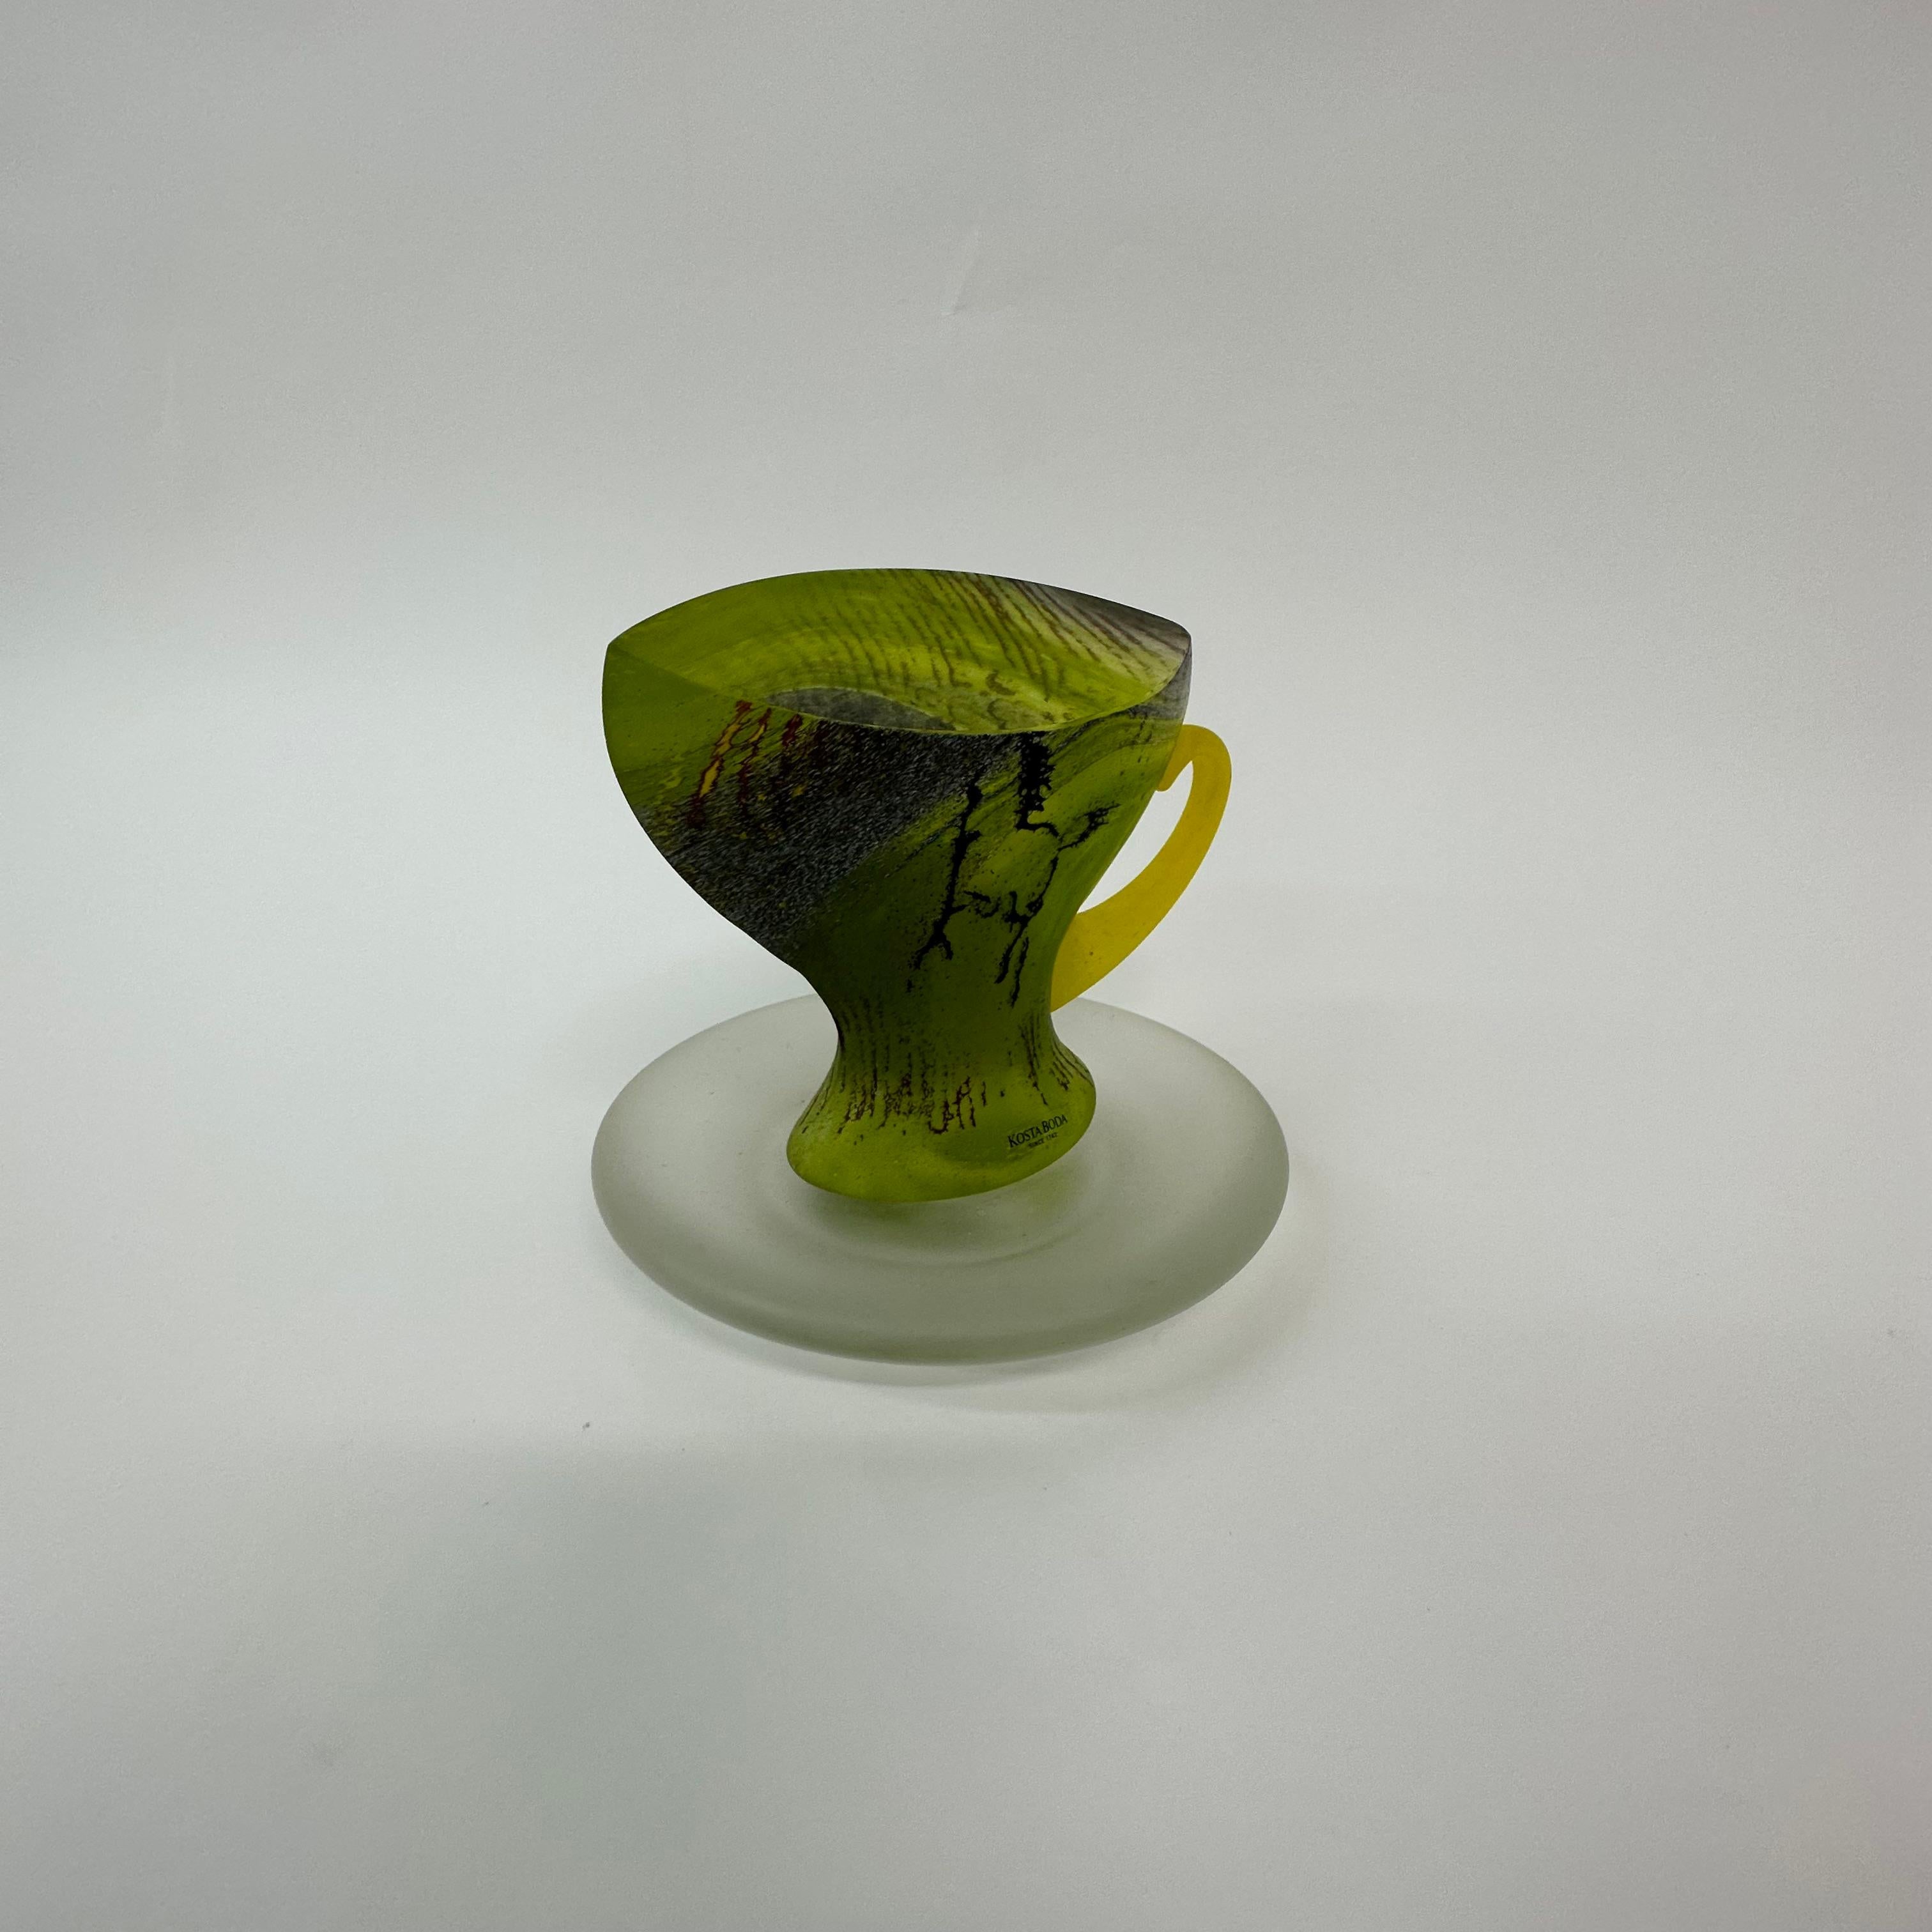 Rare Kjell Engman for Kosta Boda Sweden Green Glass teacup , 1980’s For Sale 2